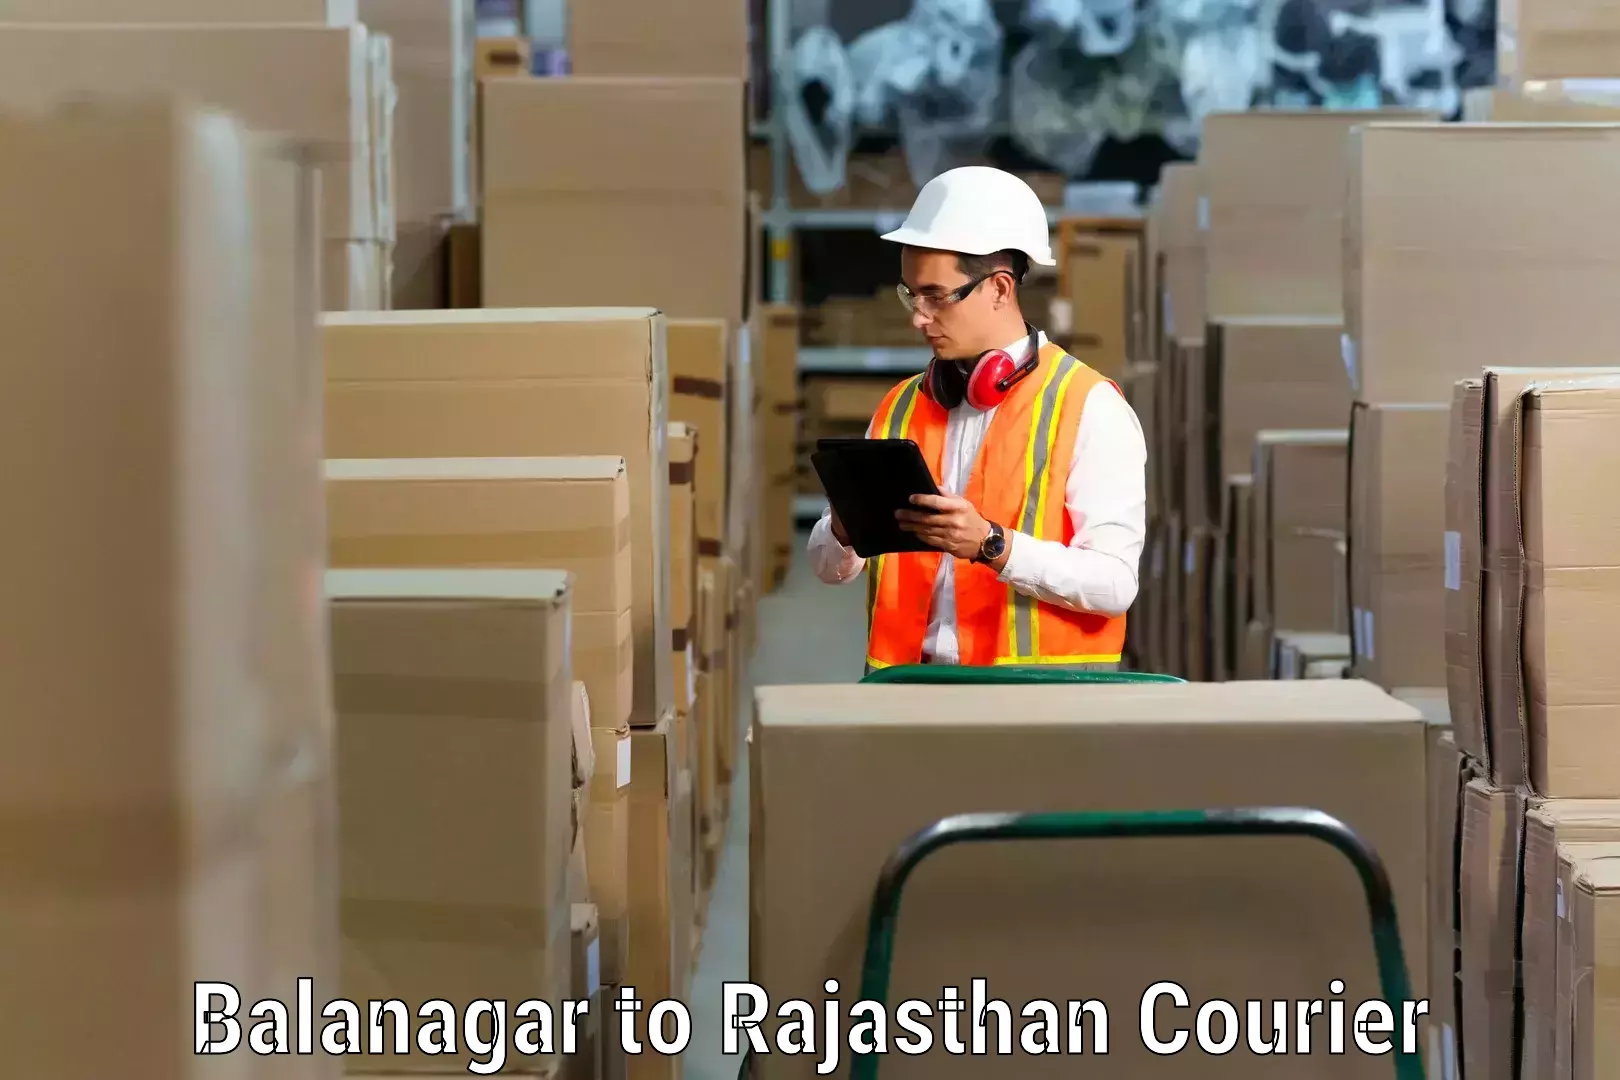 Furniture transport experts Balanagar to Rajasthan